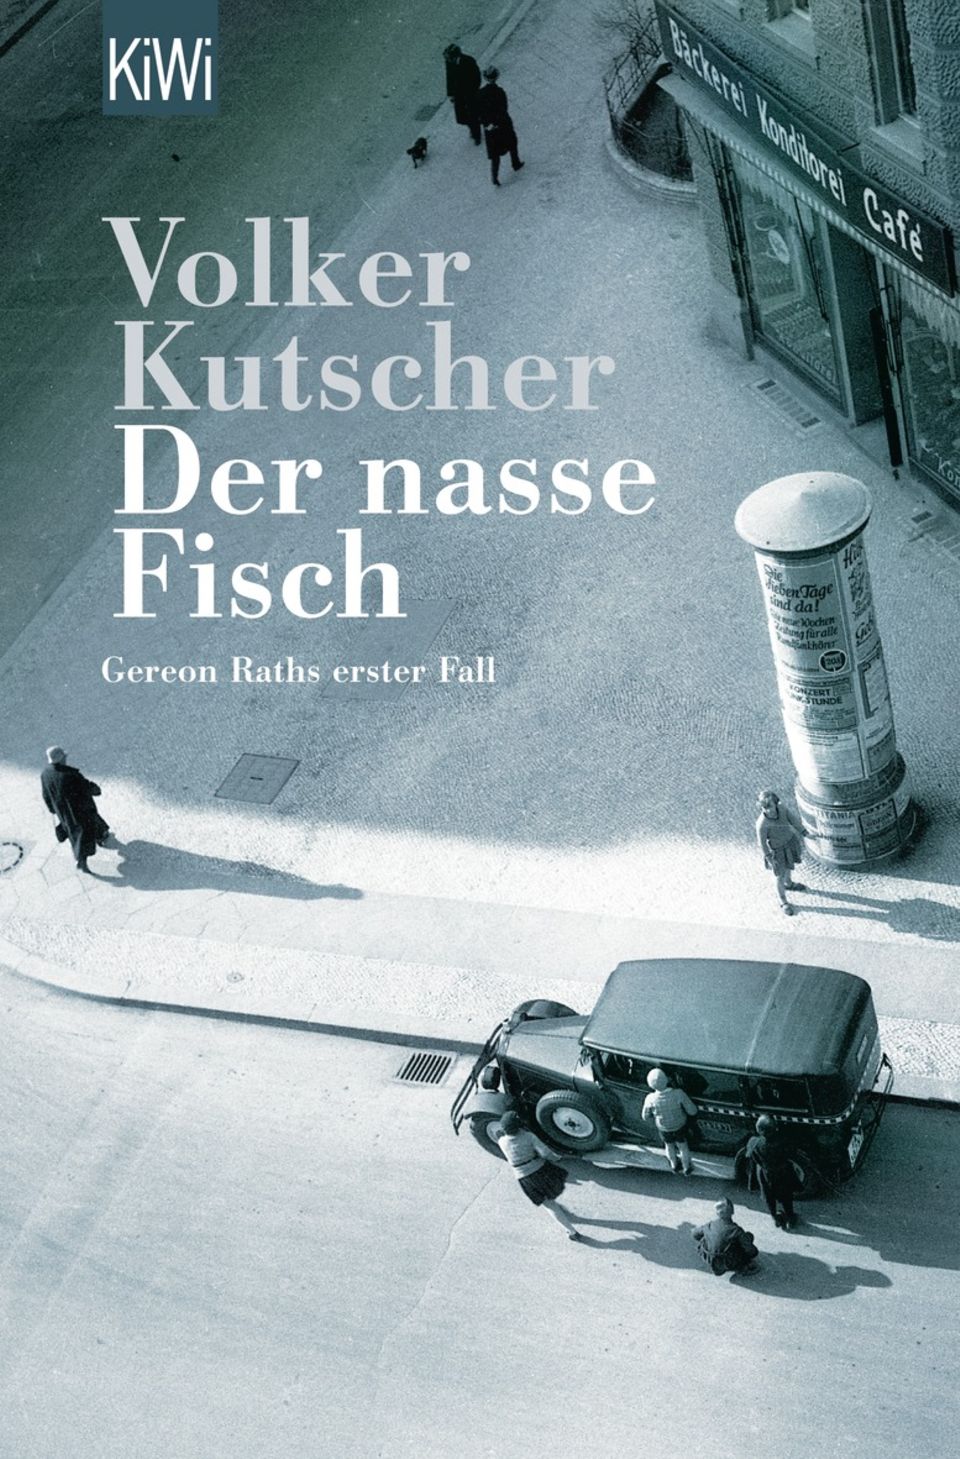 "Der nasse Fisch" von Volker Kutscher